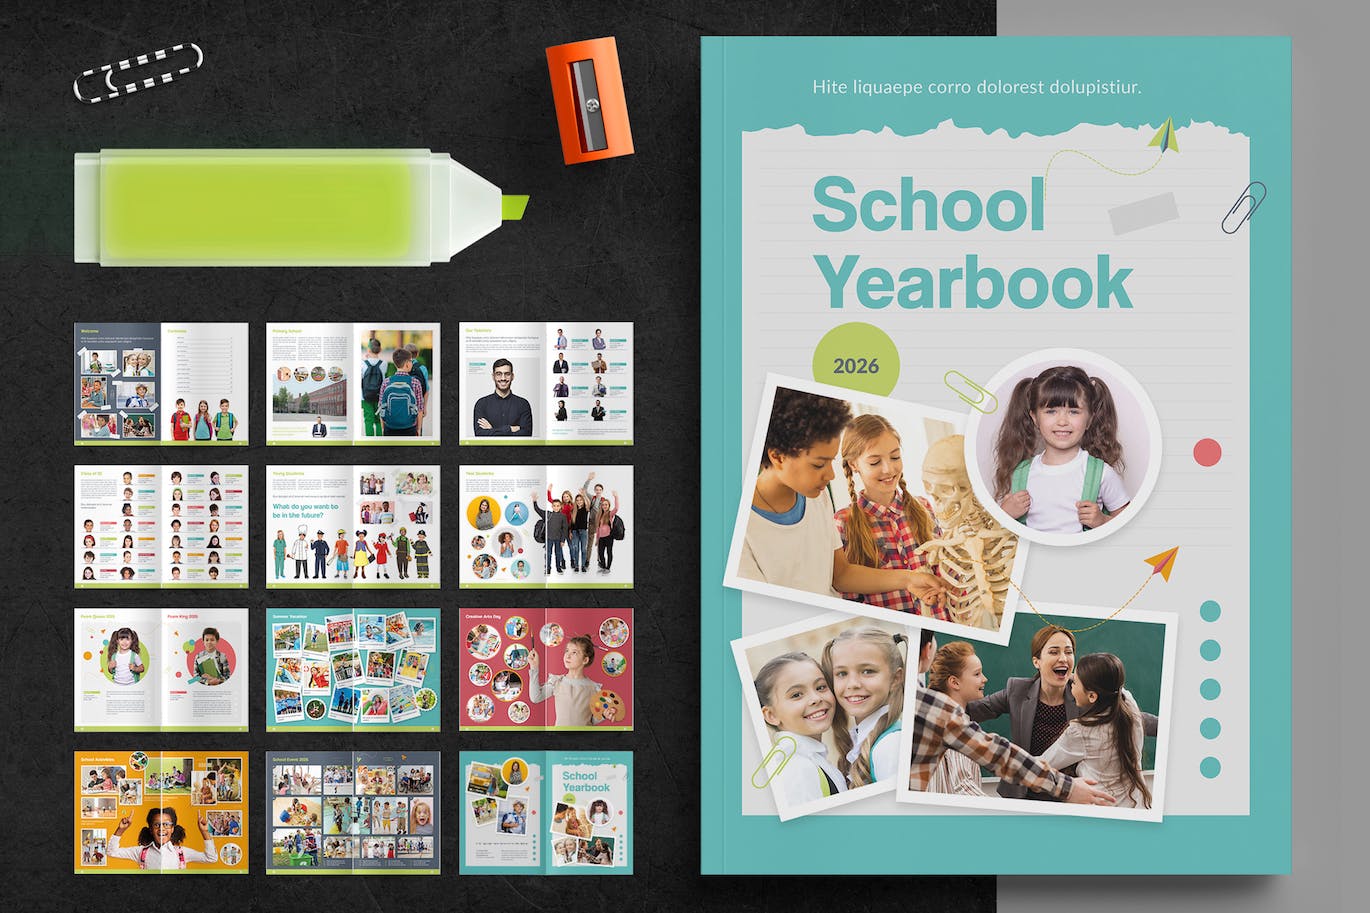 多彩创意的学校年鉴相册杂志模板 School Yearbook 设计素材 第1张